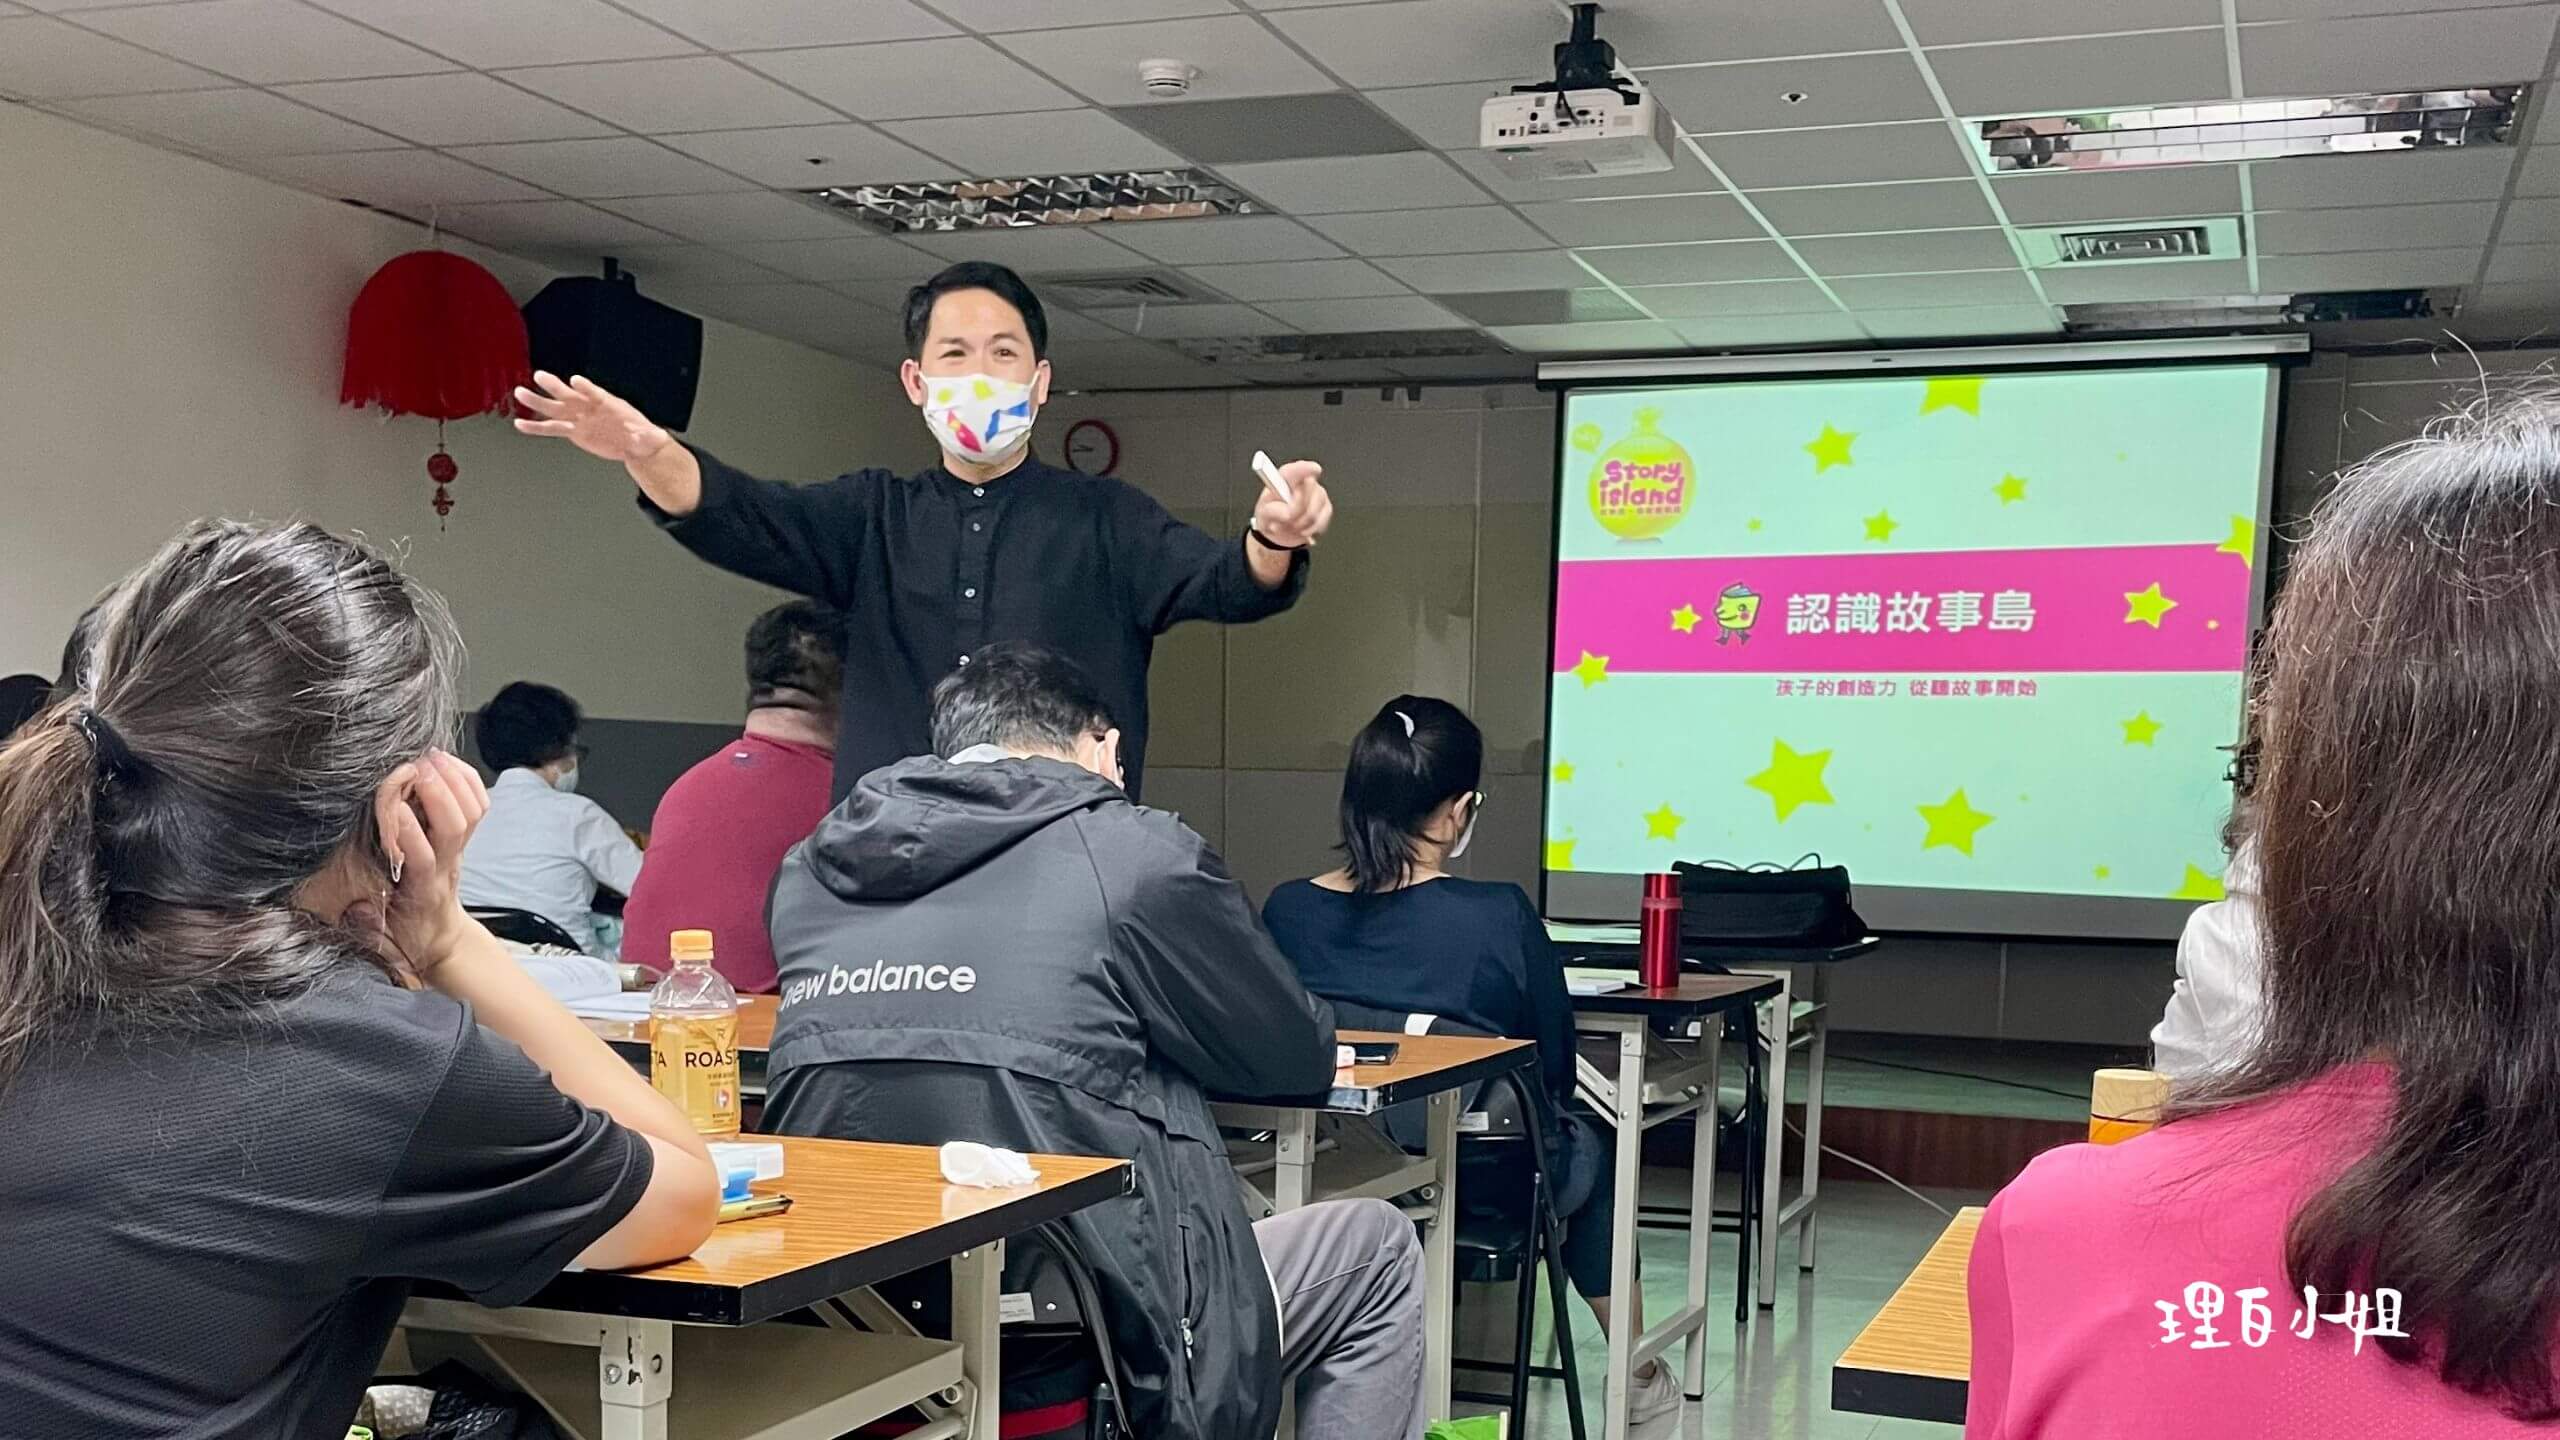 臺北市就業服務處 老師幾乎都在台下和大家互動